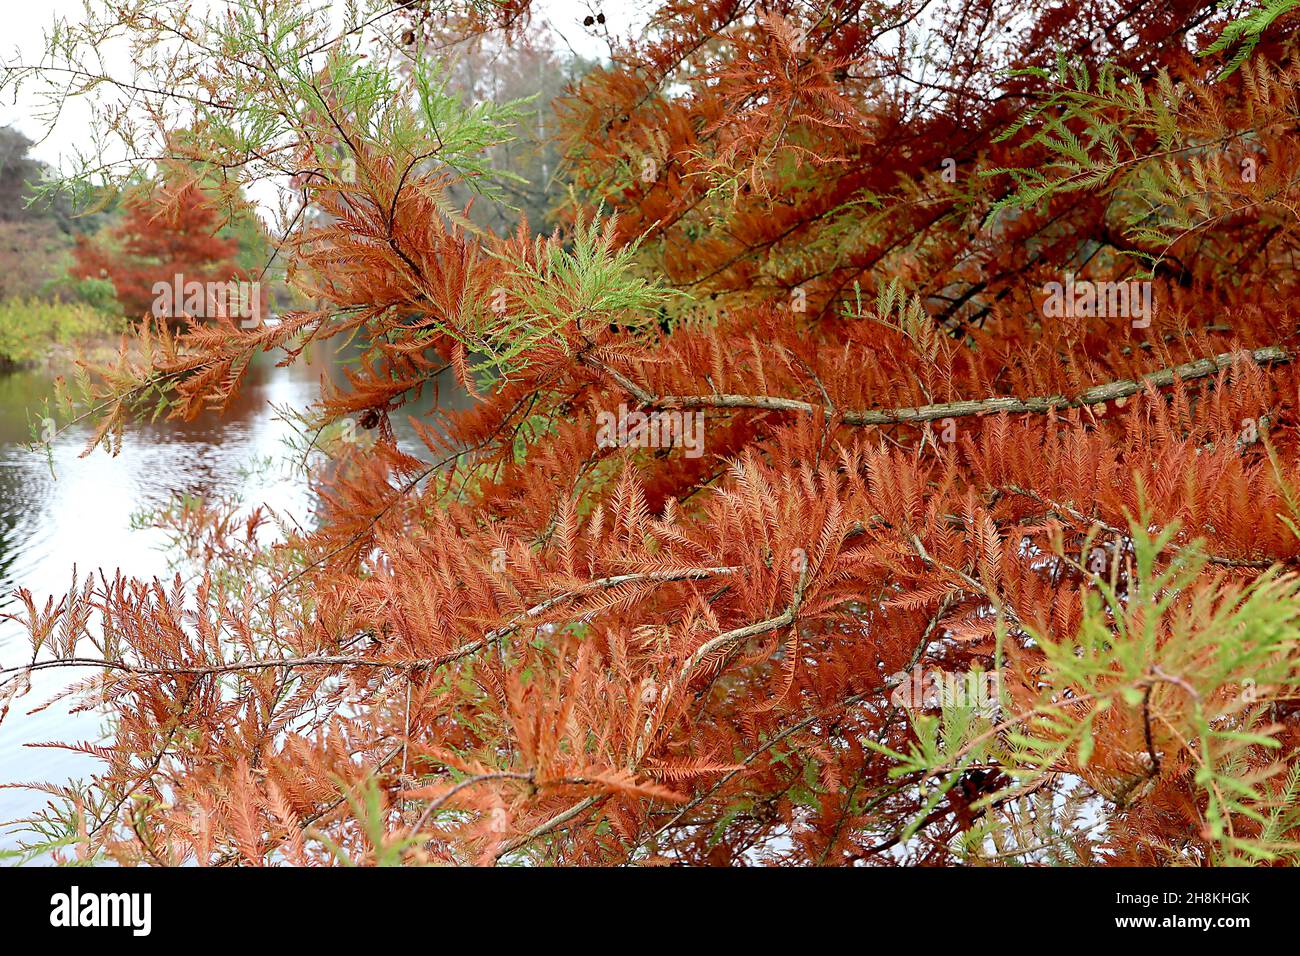 Taxodium destichum Sumpf-Zypresse - mittelgrünes und orangefarbenes federiges Laub auf dunkelbraunen hängenden Ästen, November, England, Großbritannien Stockfoto